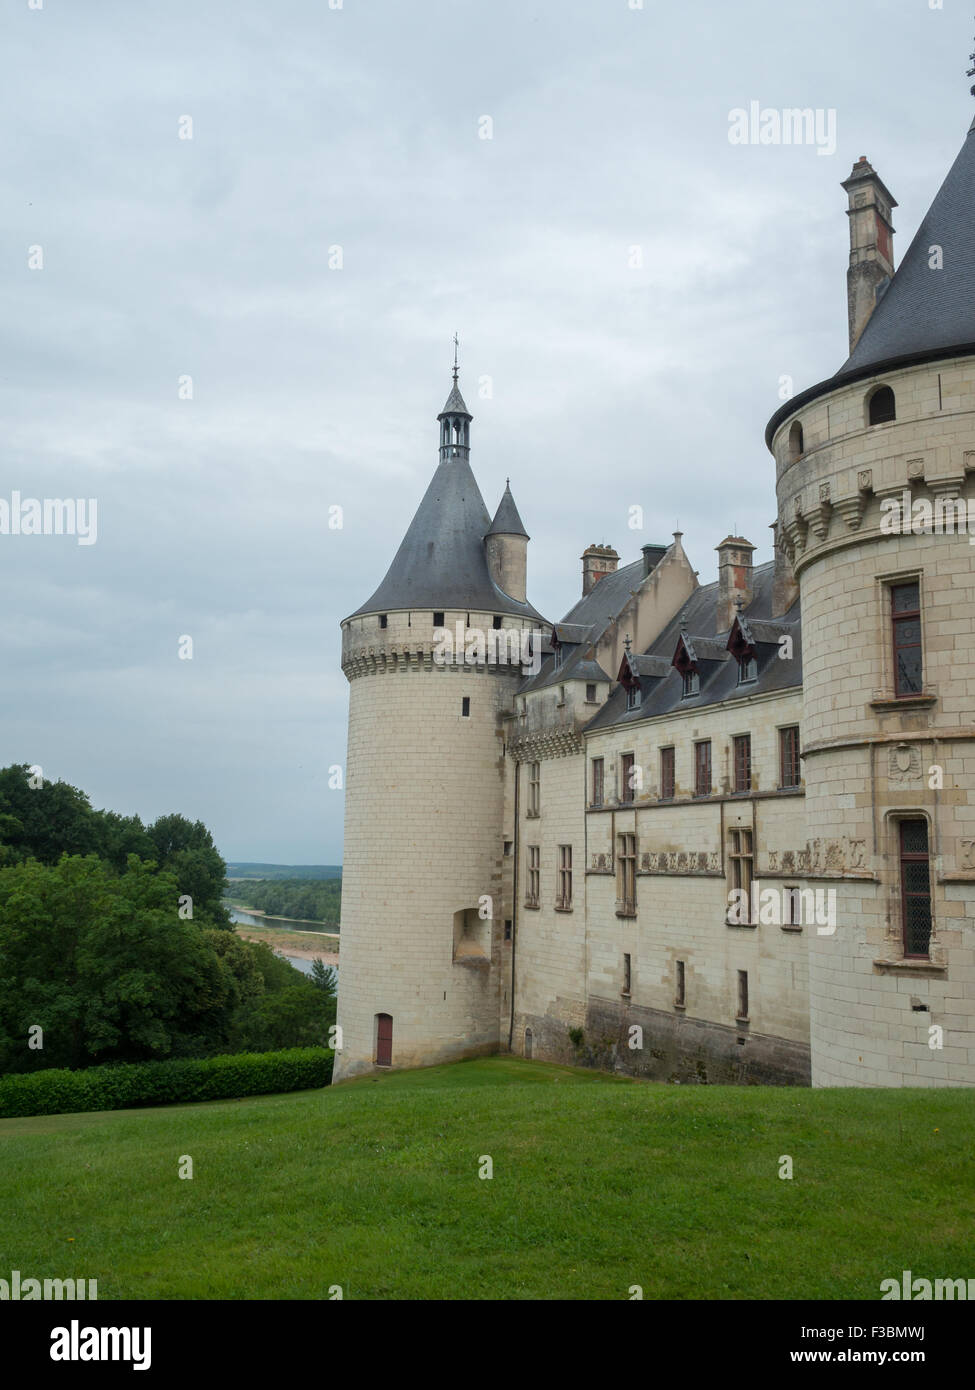 Chaumont-sur-Loire Chateau towers Stock Photo